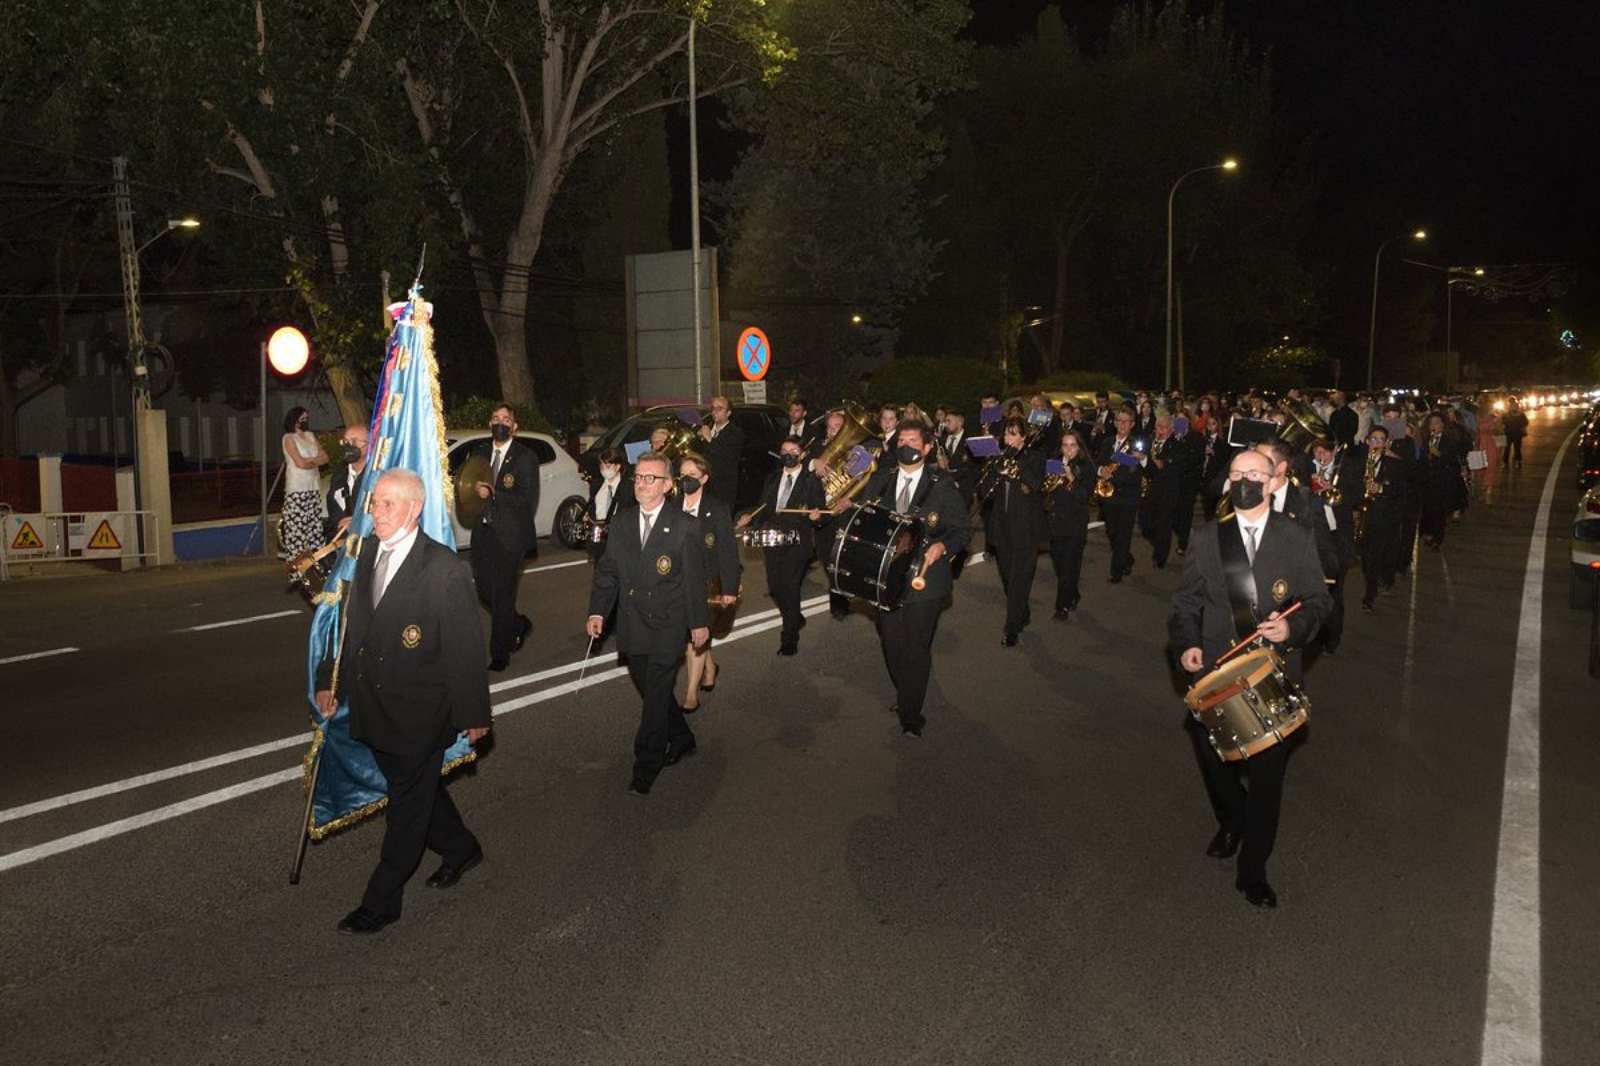 Los pregones Mayores y Jóvenes dan paso a cinco días de Feria en Argamasilla de Alba